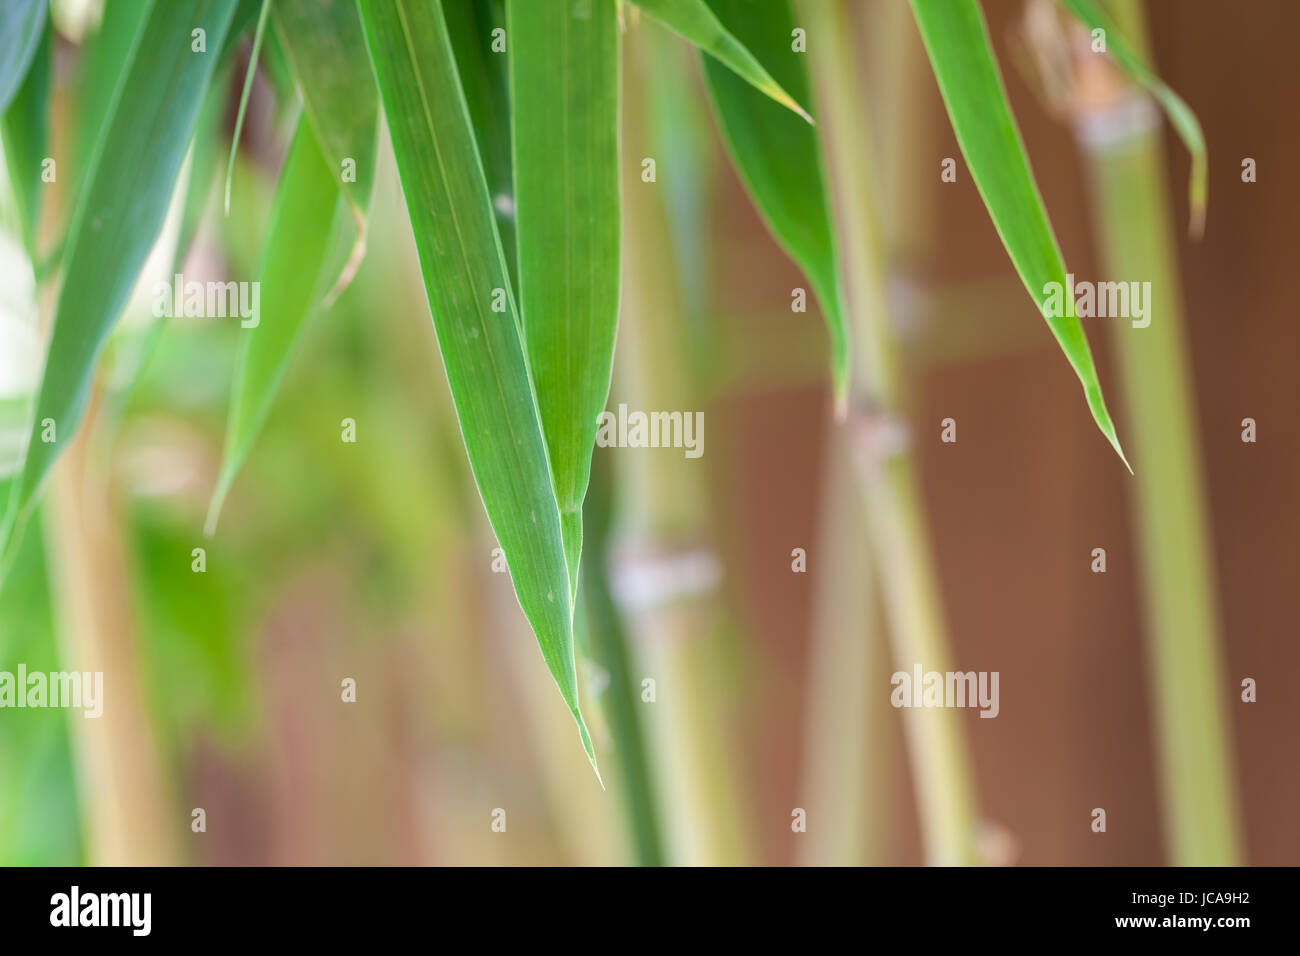 Frische grünen Blätter von Bambus Zierbambus und Stamm vor Blauem Himmel Nahaufnahme Foto Stock